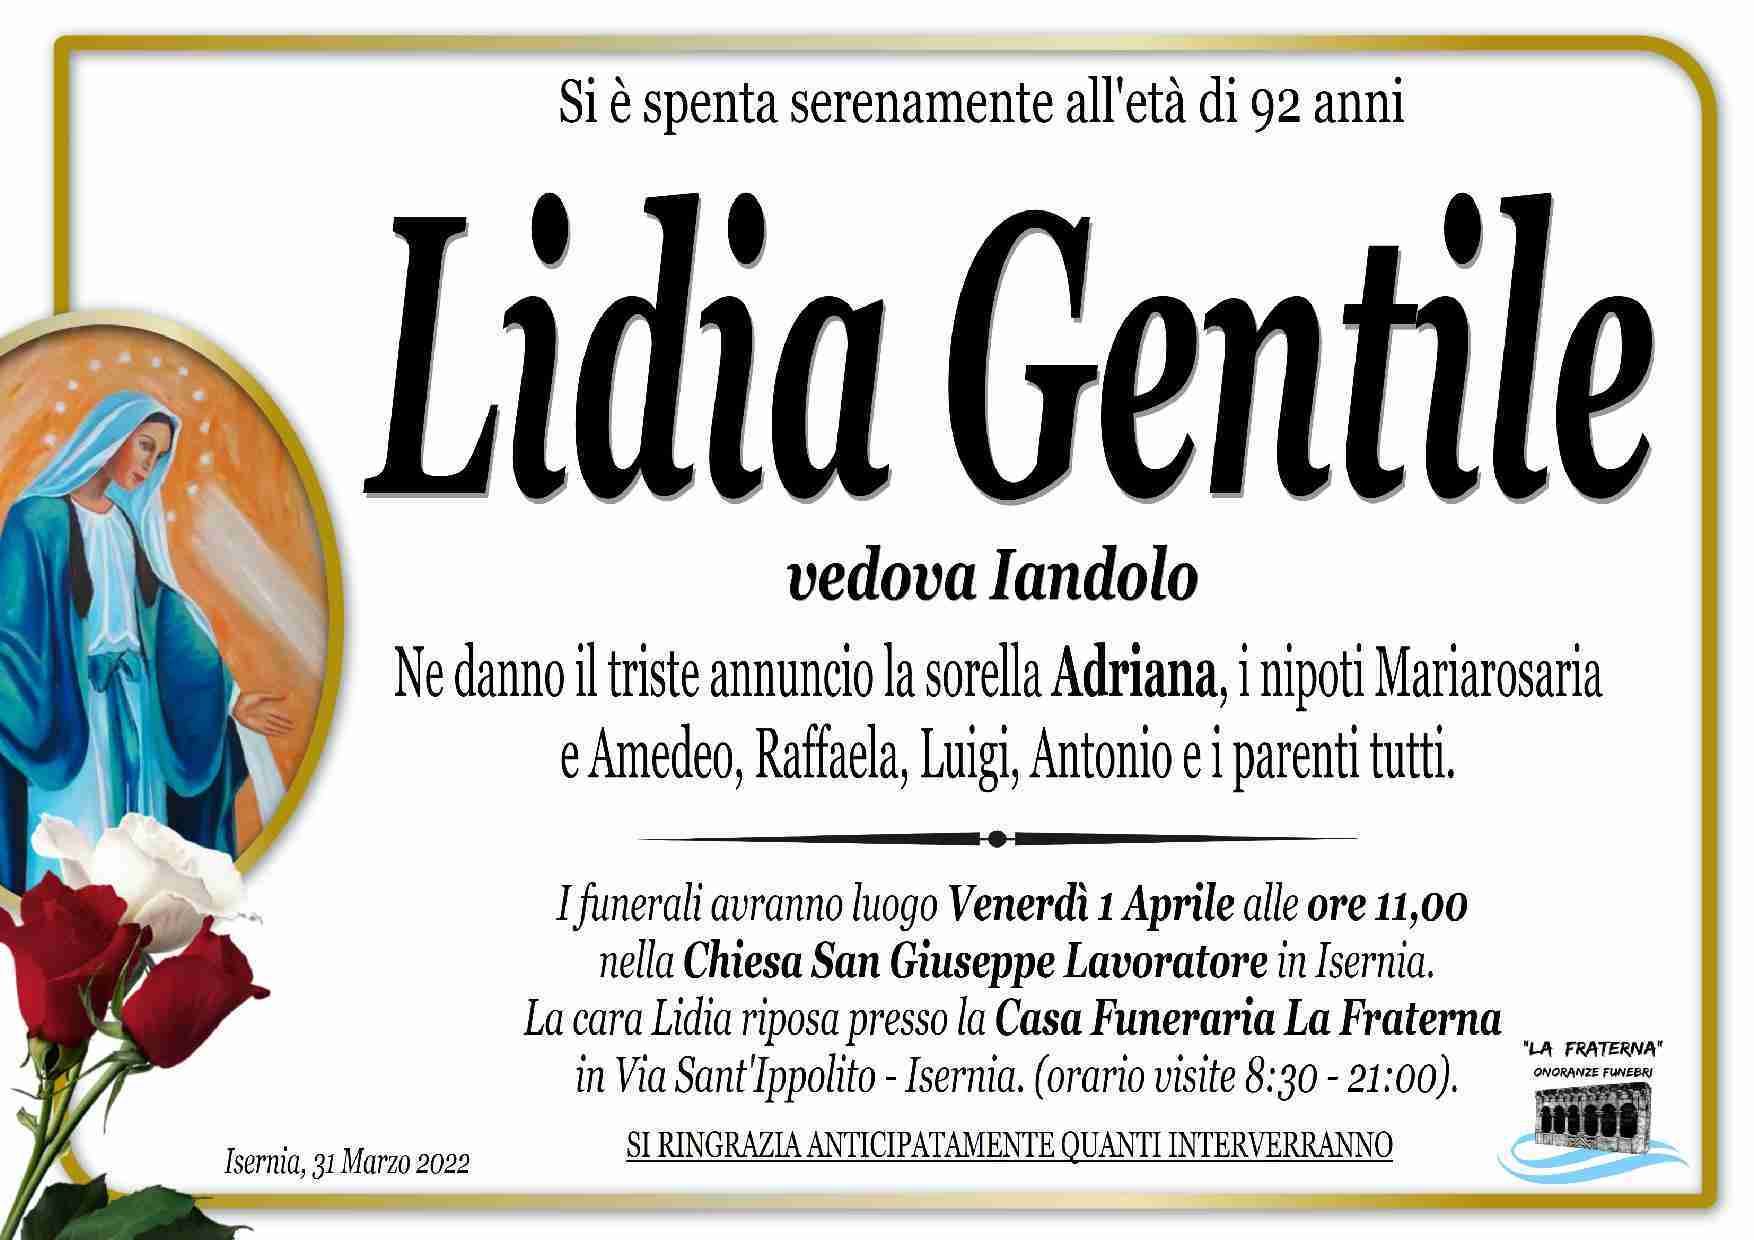 Lidia Gentile